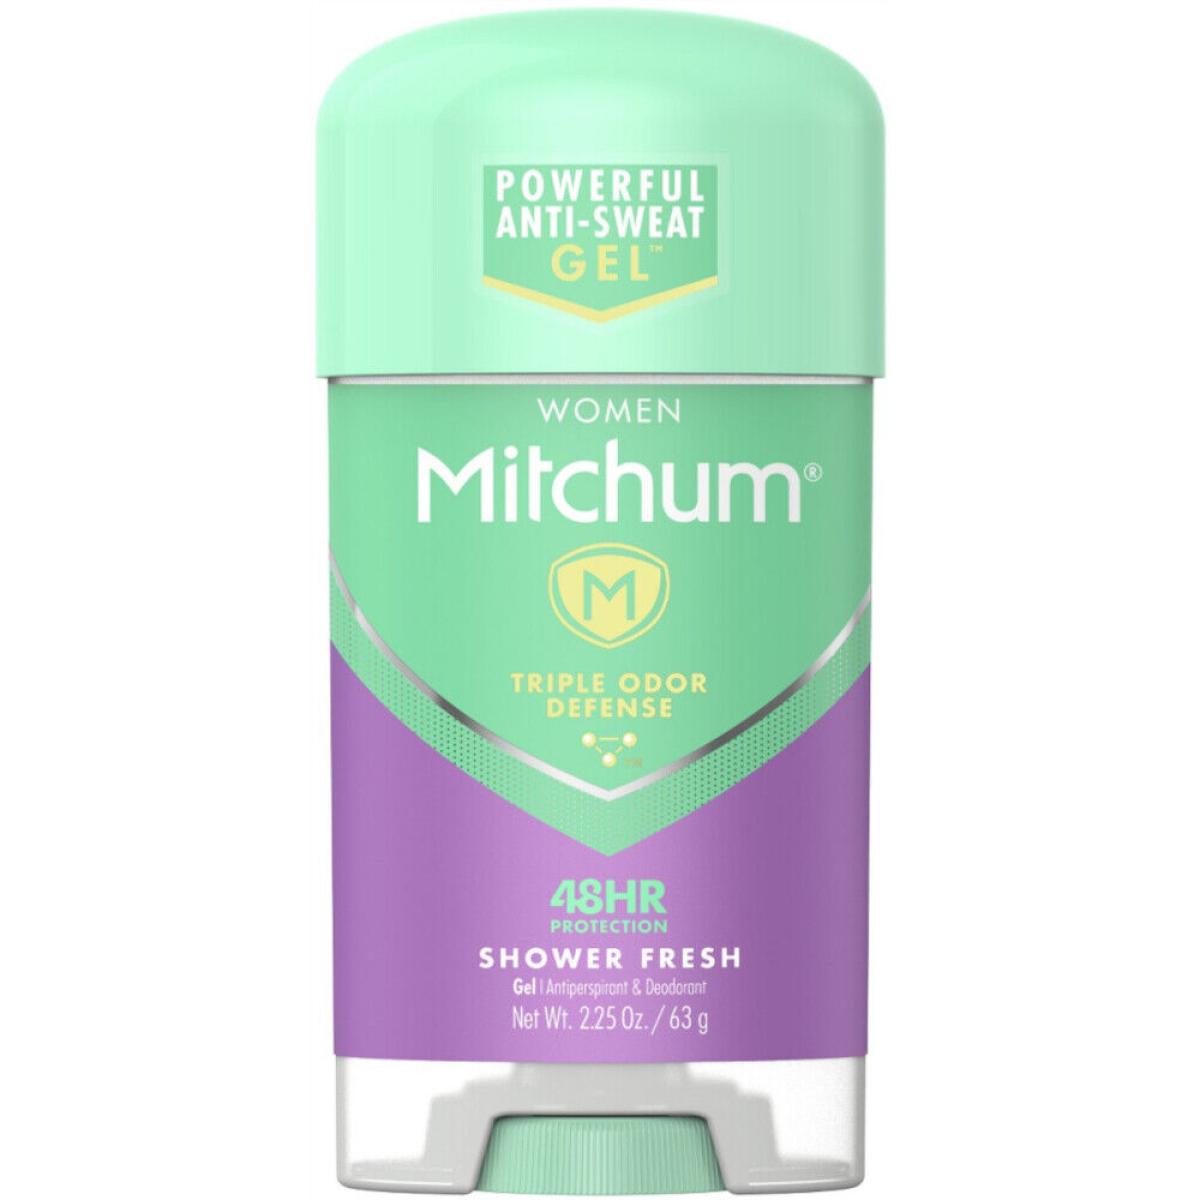 ژل شفاف ضد تعریق زنانه Shower Fresh - mitchum powder deodorant gel